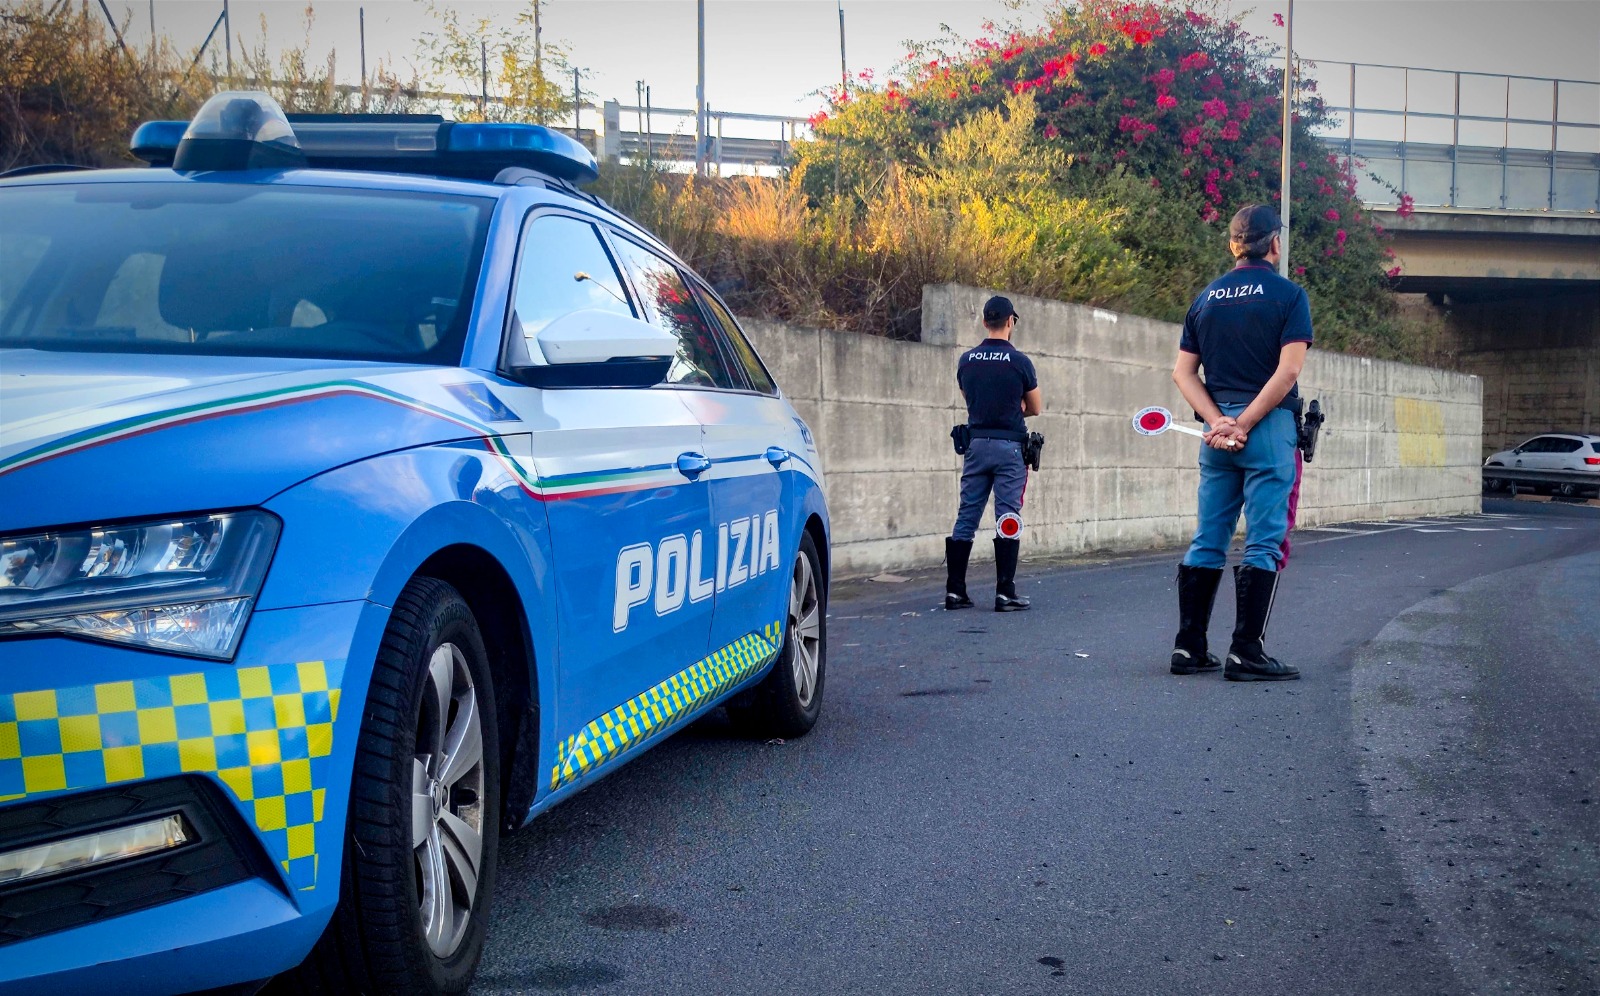 Sicurezza sulle strade, attività incessante della polizia di Catania